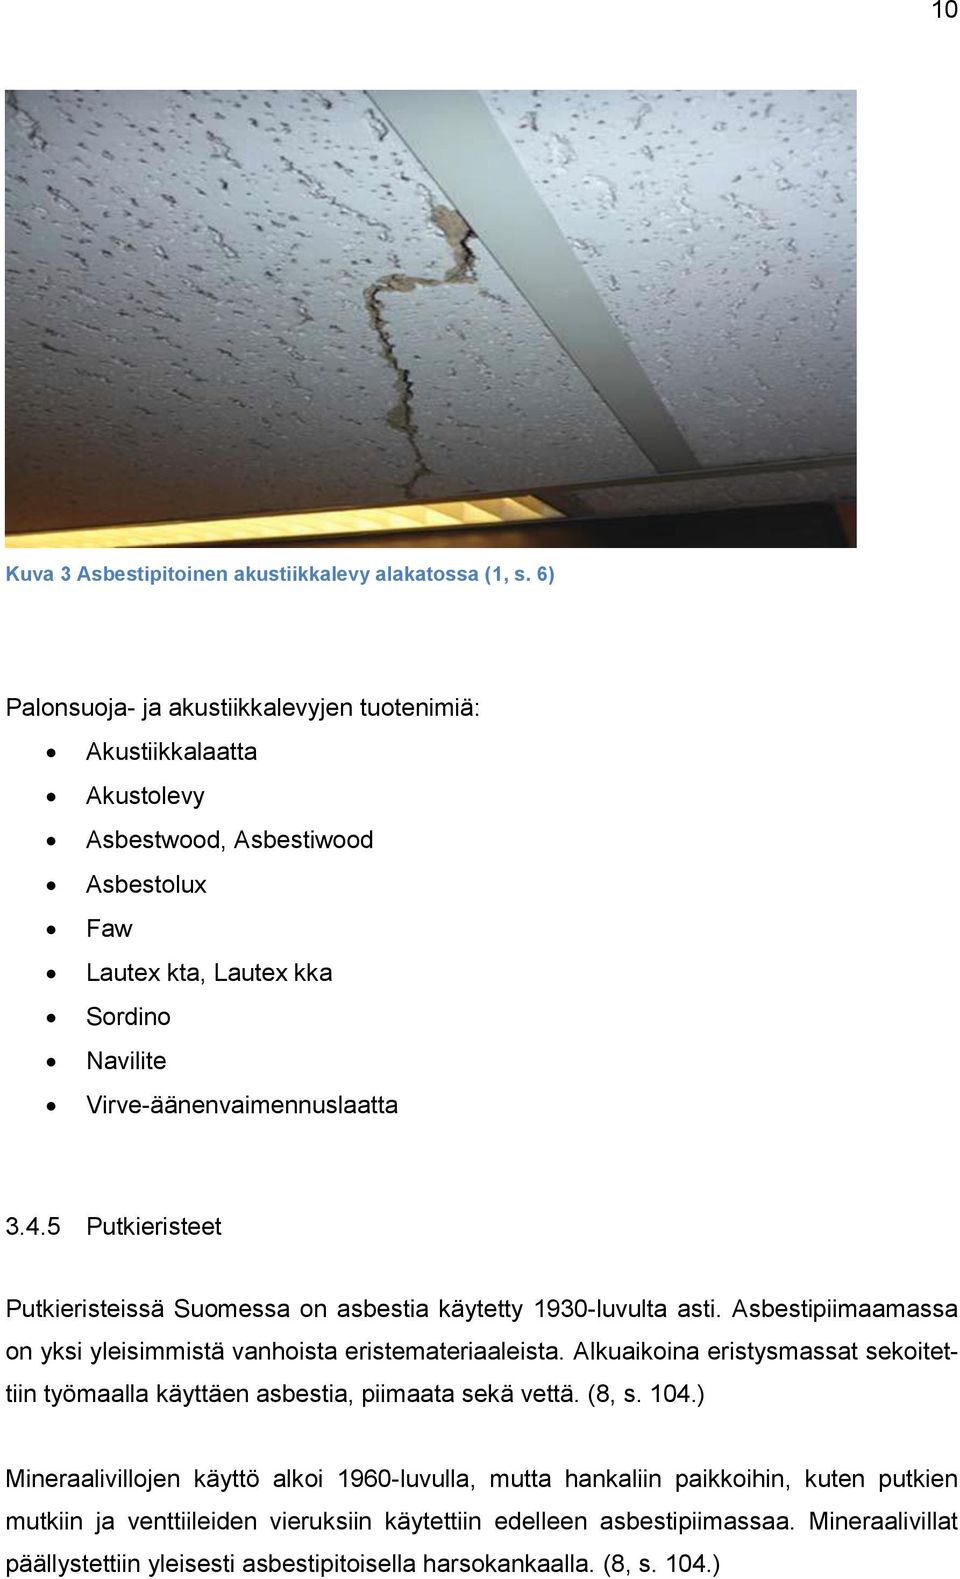 5 Putkieristeet Putkieristeissä Suomessa on asbestia käytetty 1930-luvulta asti. Asbestipiimaamassa on yksi yleisimmistä vanhoista eristemateriaaleista.